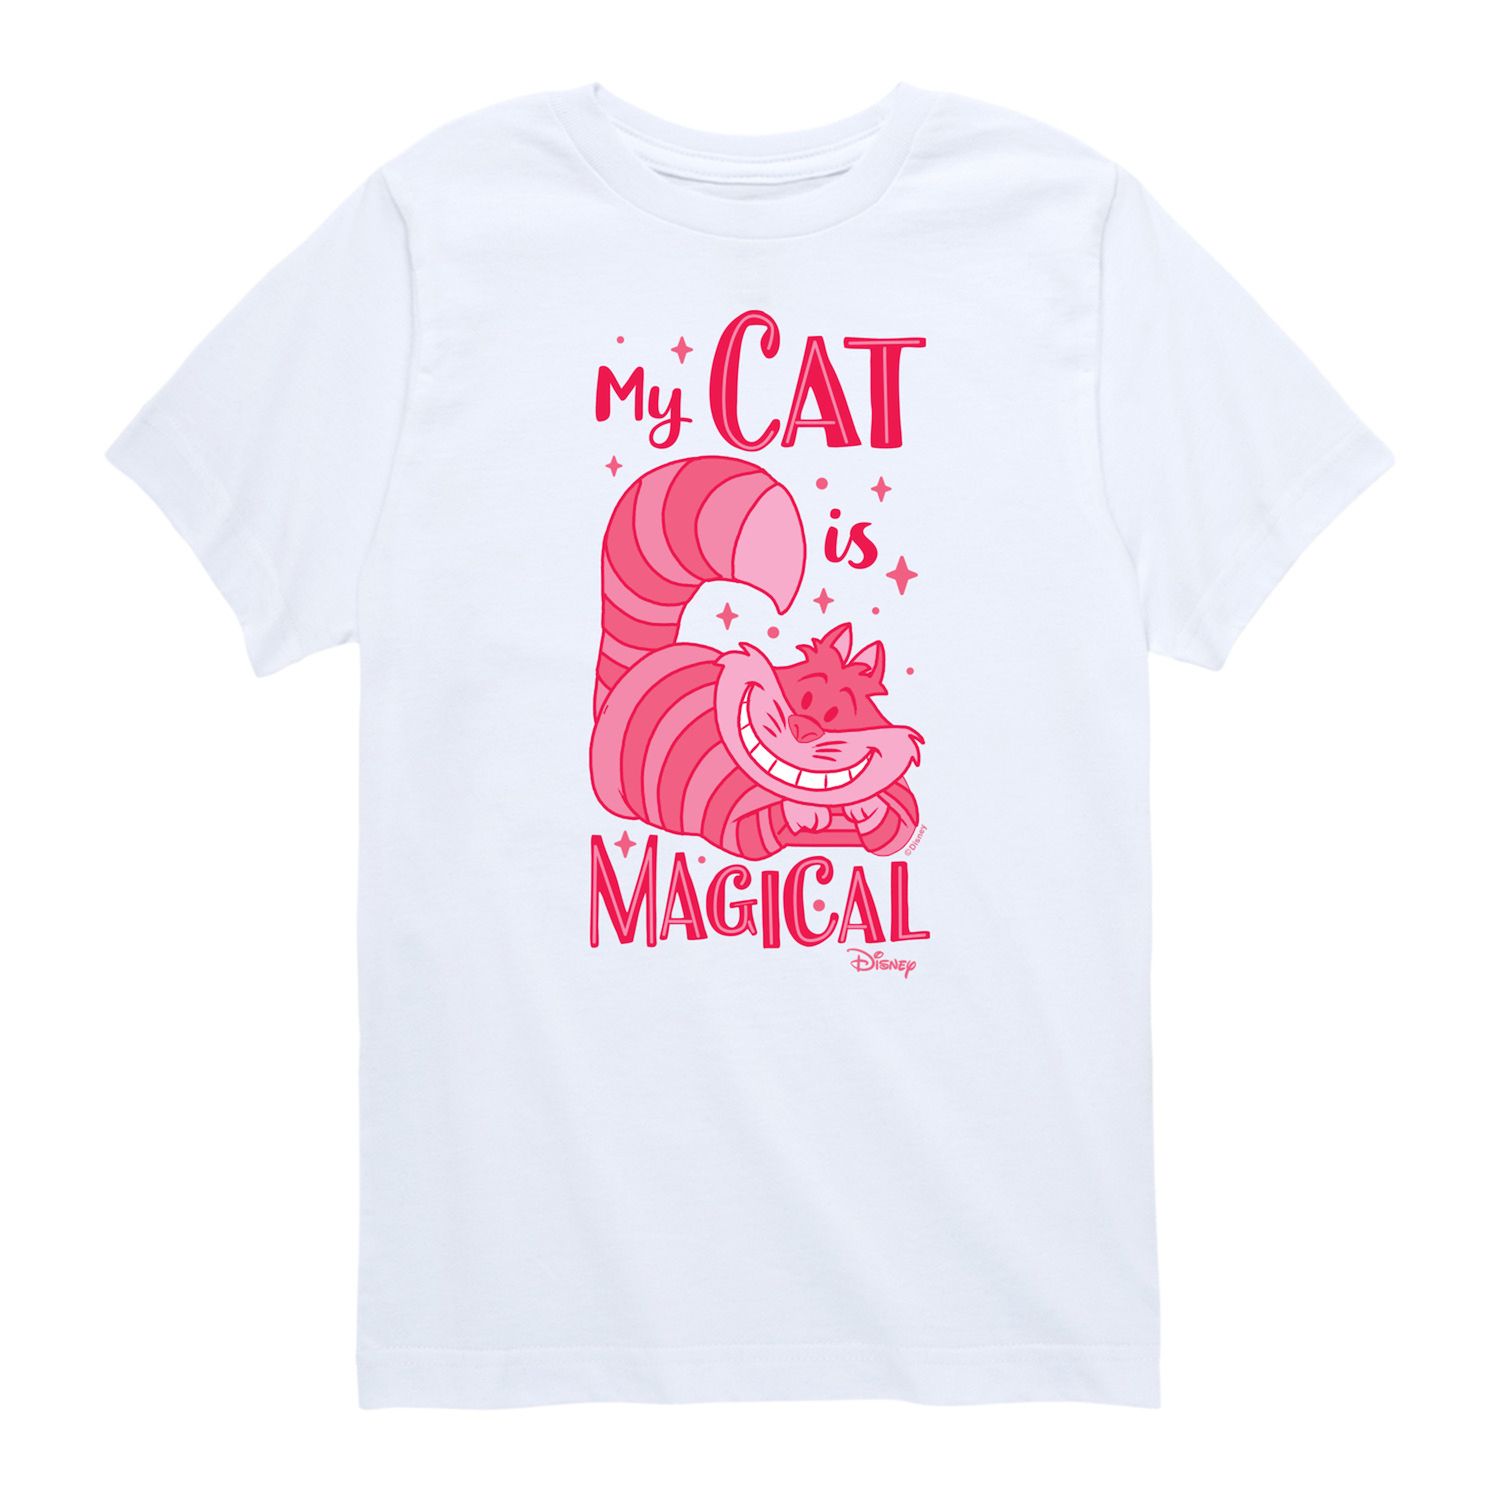 Футболка с рисунком «Мой кот волшебный» для мальчиков 8–20 лет «Алиса в стране чудес» и «Чеширский кот» Disney. Disney, белый